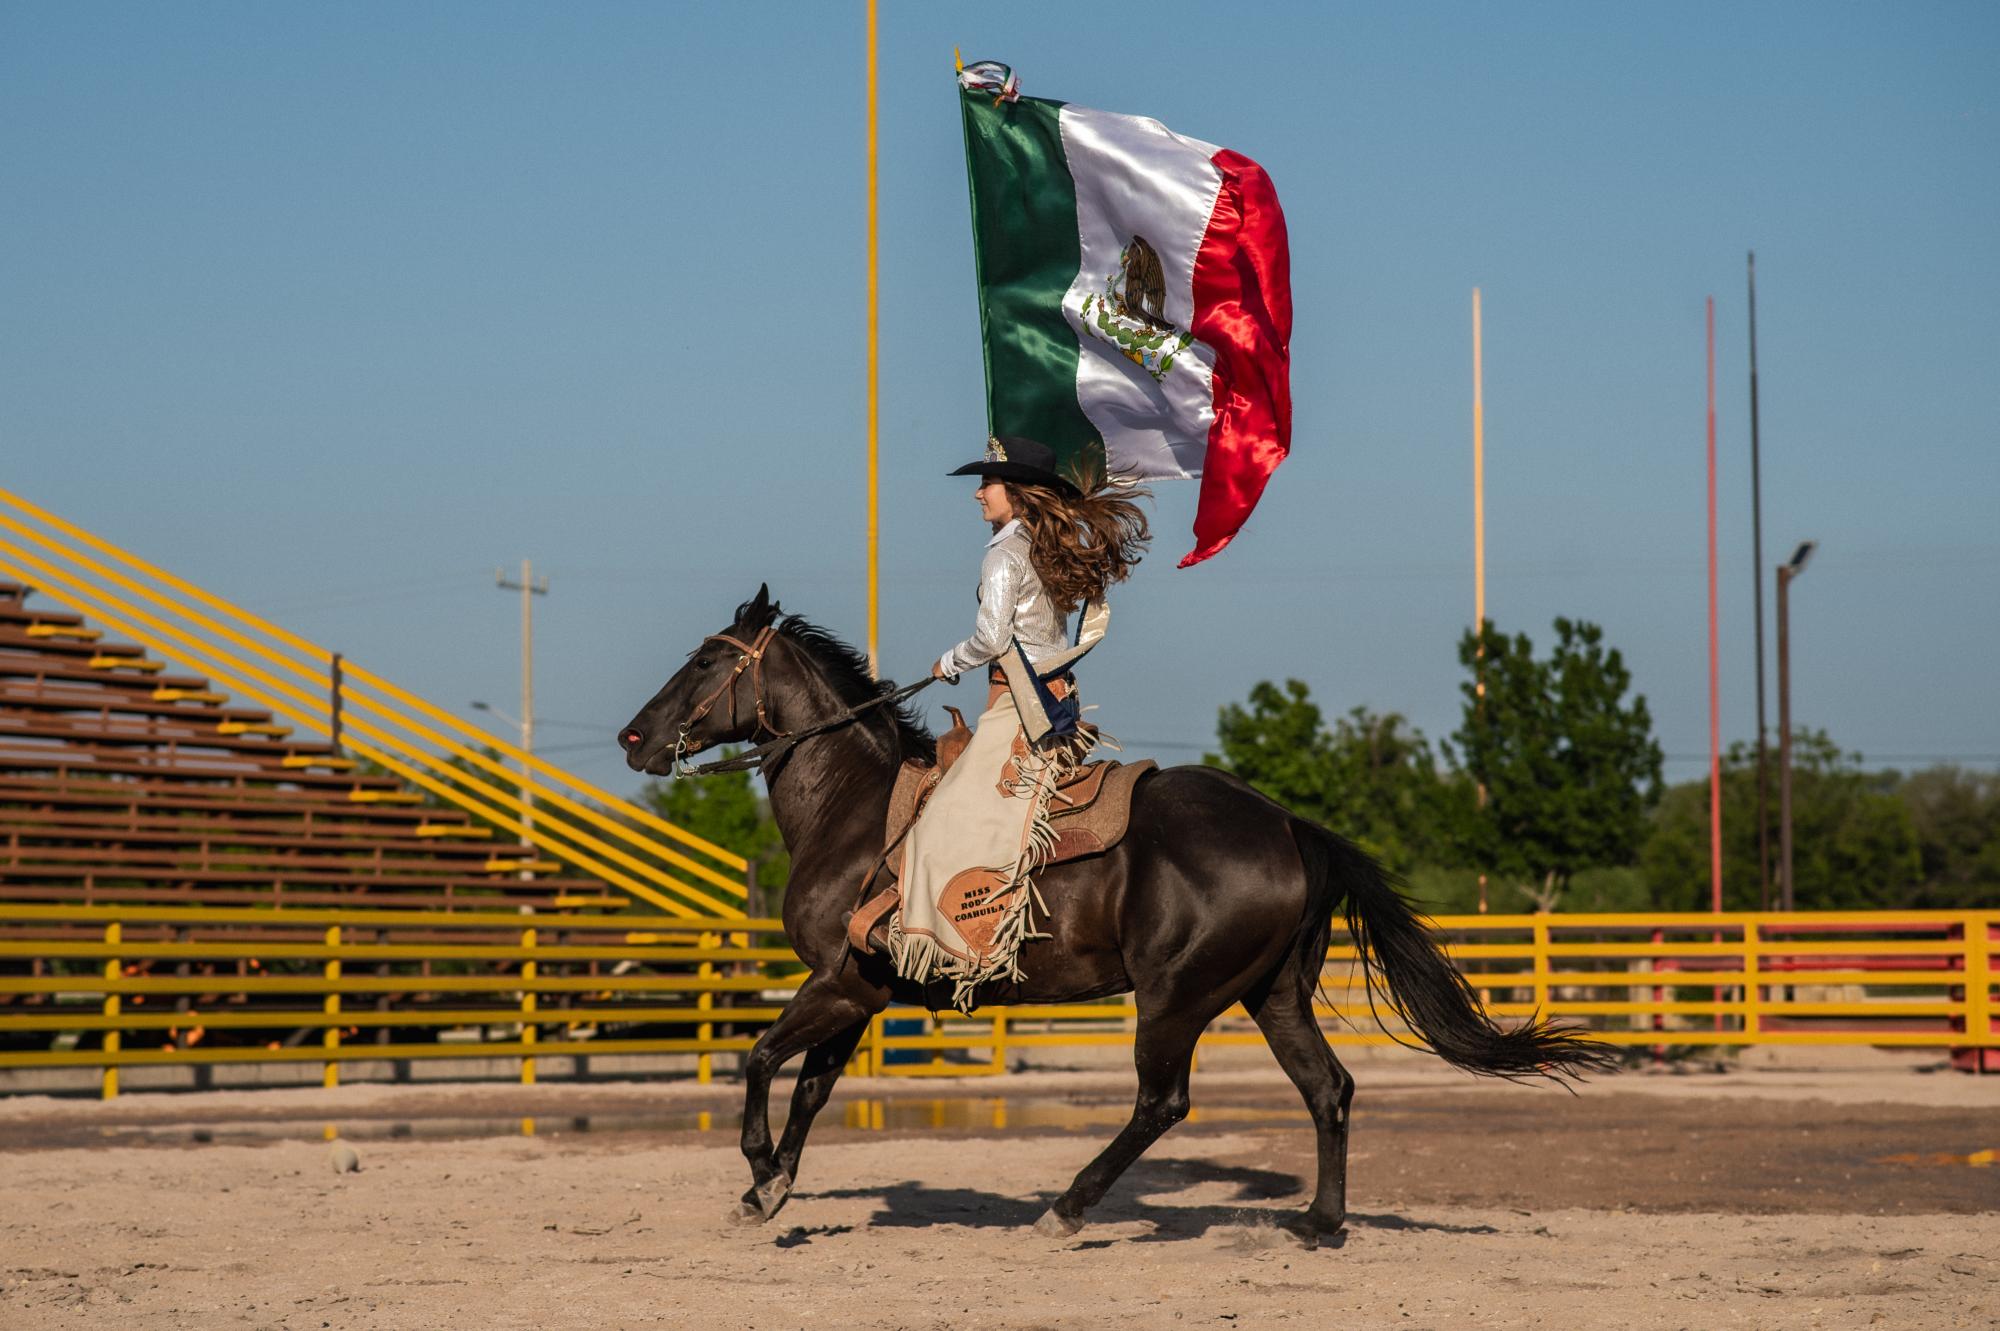 $!Las suertes de rodeo que realiza la mexicana, son Amarre de Chiva y Carrera de Barriles.